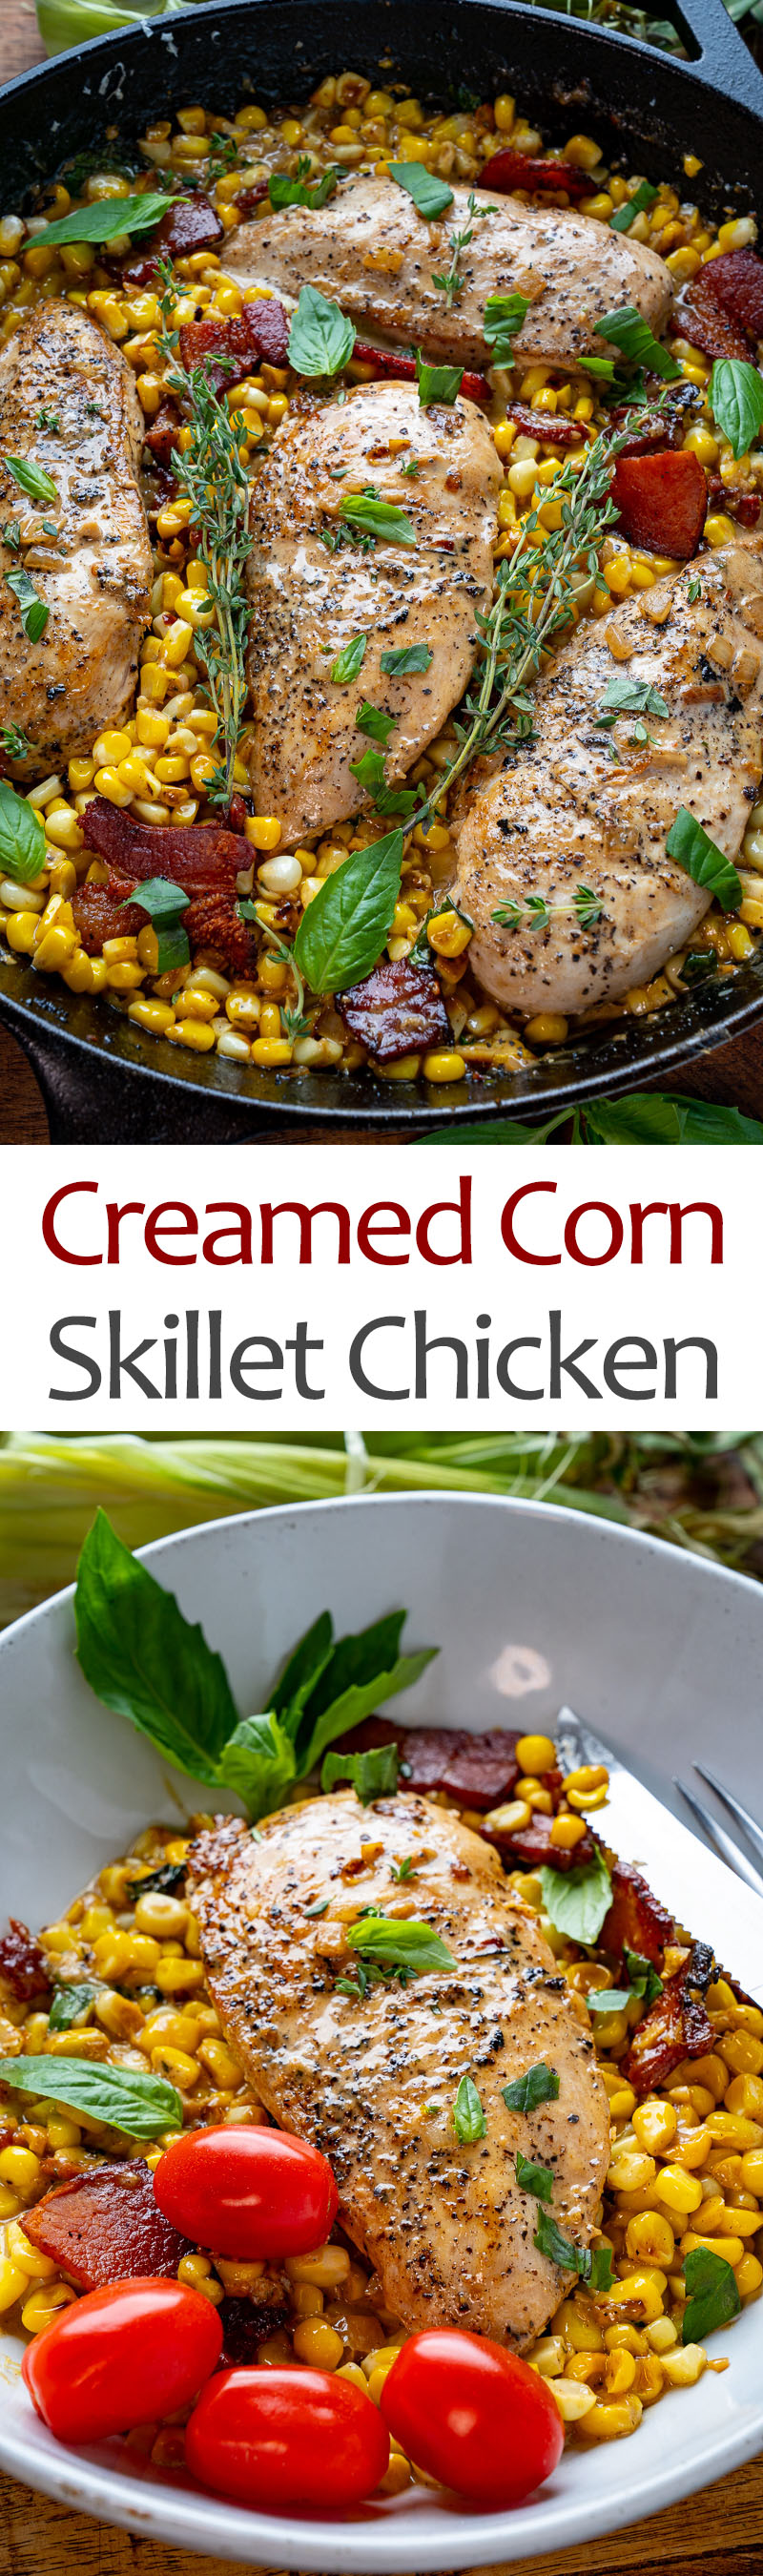 Creamed Corn Skillet Chicken